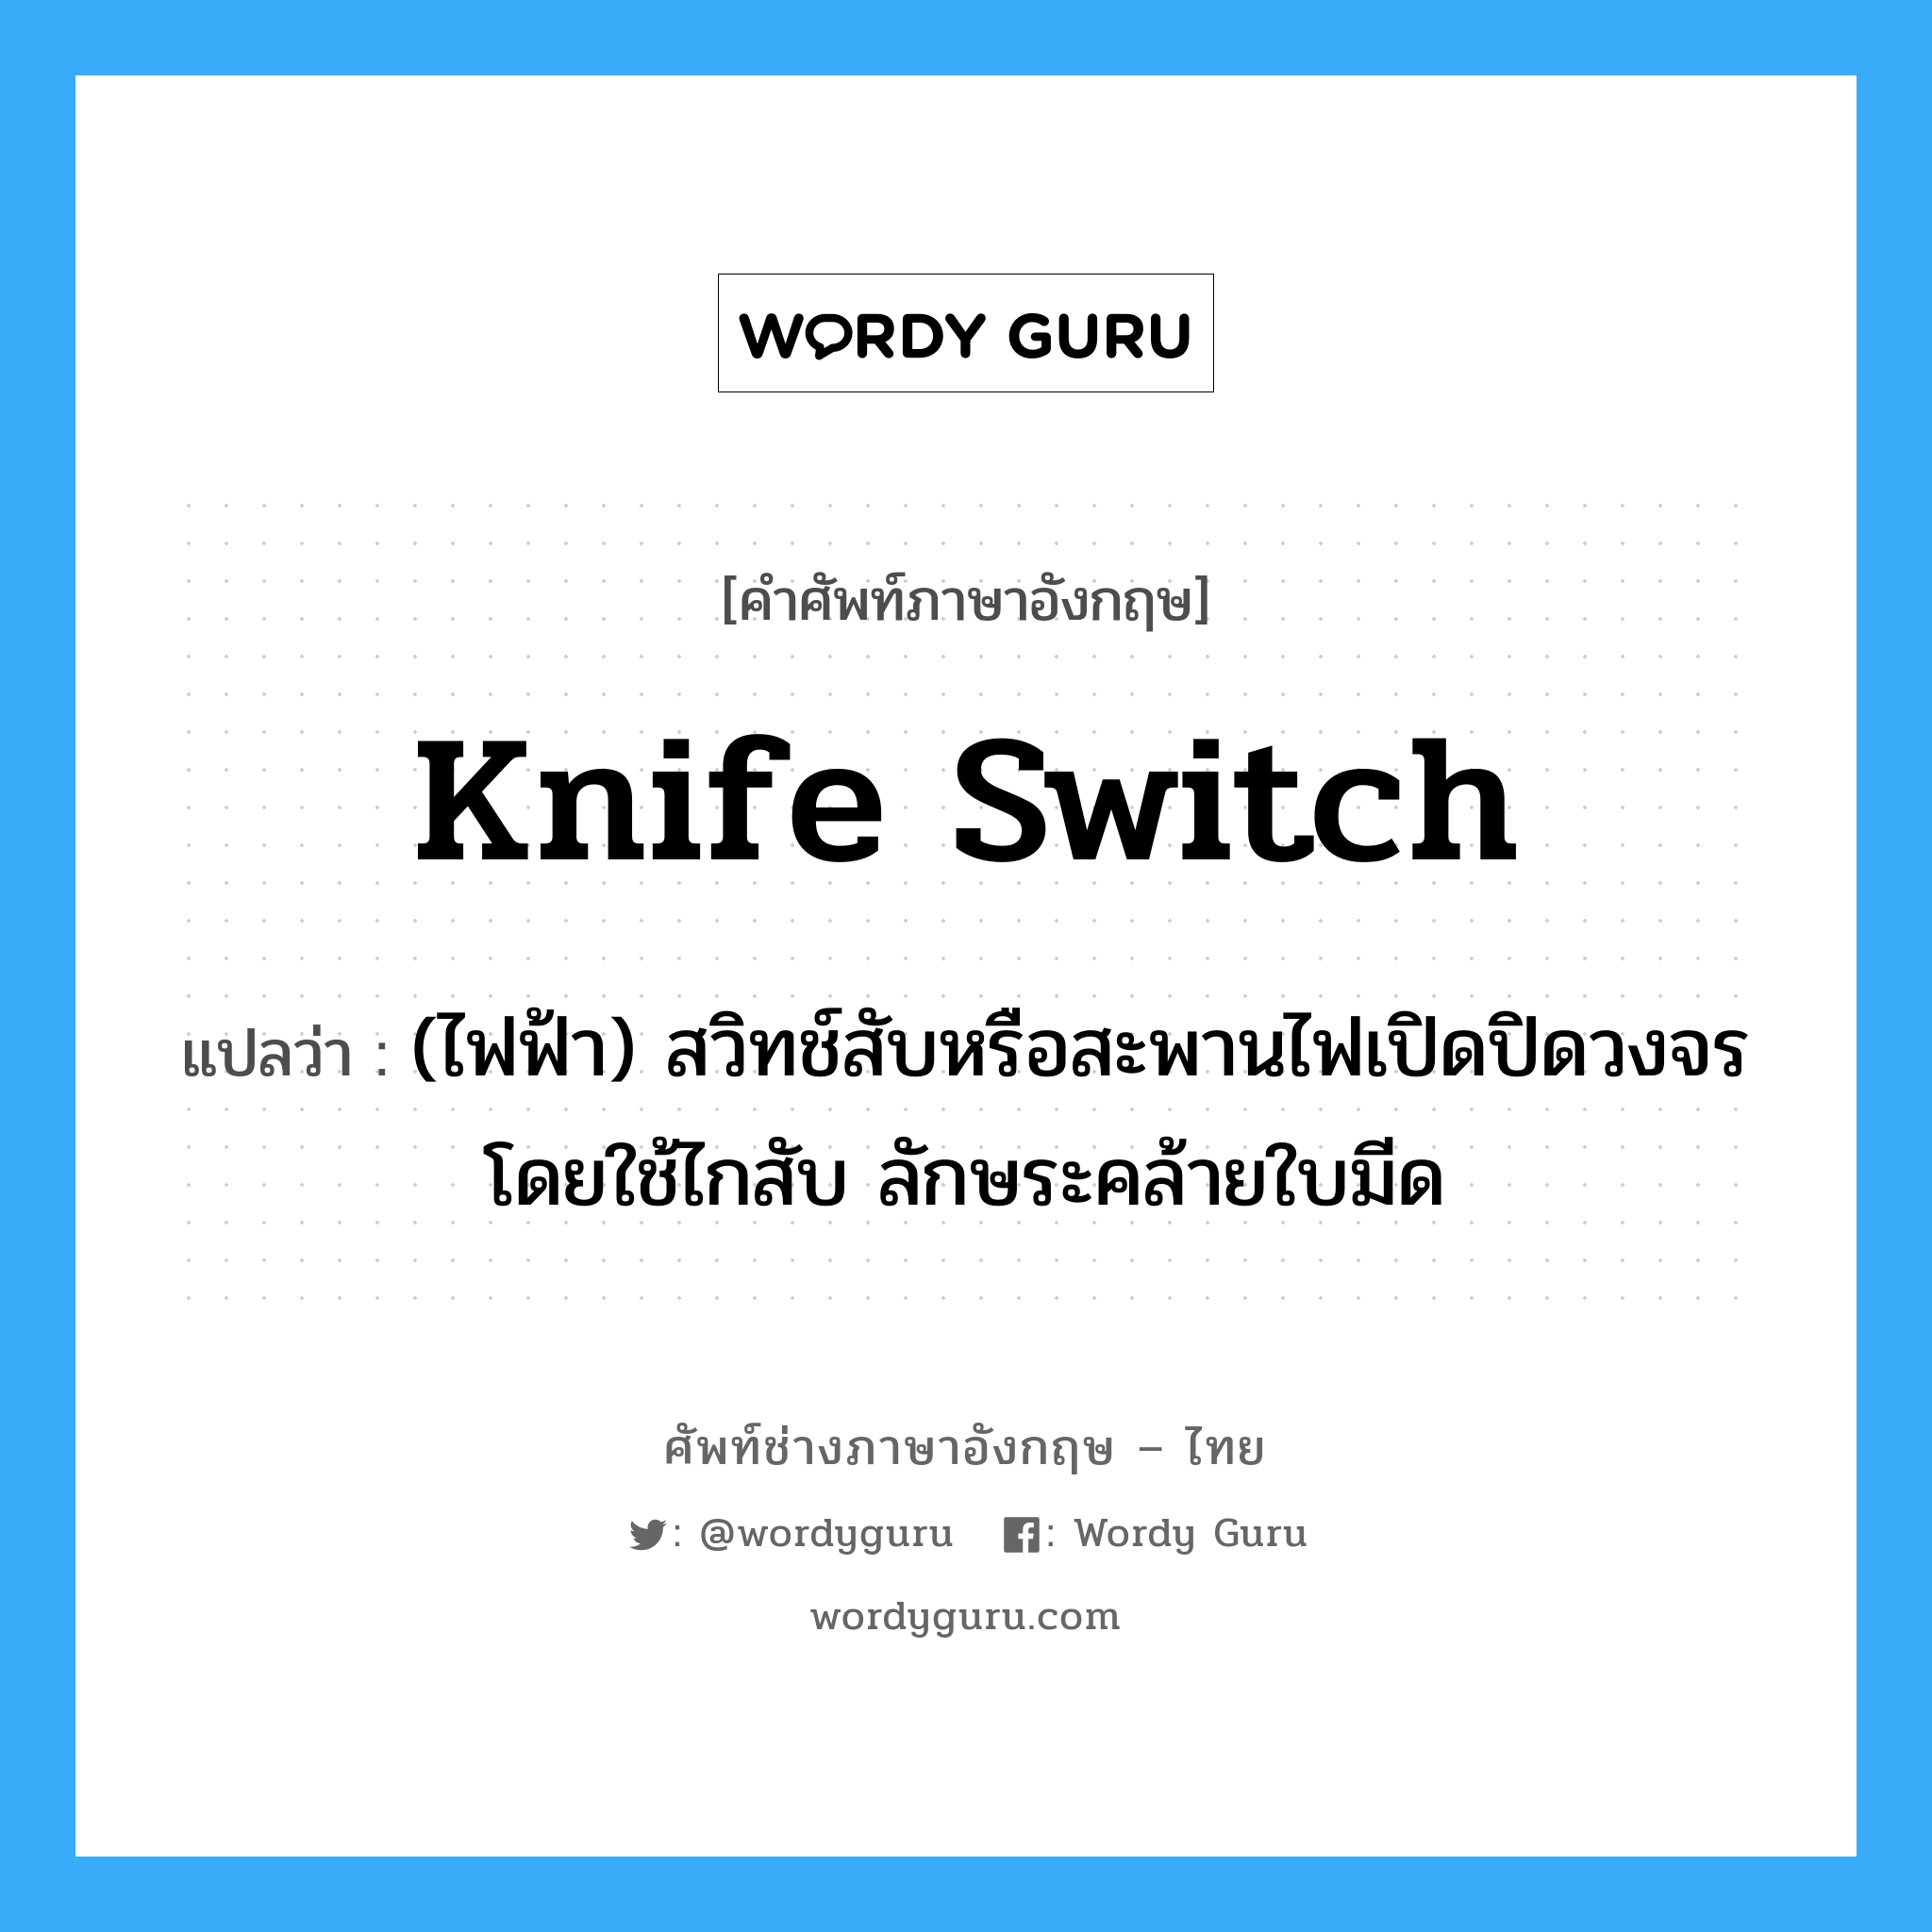 knife switch แปลว่า?, คำศัพท์ช่างภาษาอังกฤษ - ไทย knife switch คำศัพท์ภาษาอังกฤษ knife switch แปลว่า (ไฟฟ้า) สวิทช์สับหรือสะพานไฟเปิดปิดวงจรโดยใช้ไกสับ ลักษระคล้ายใบมีด